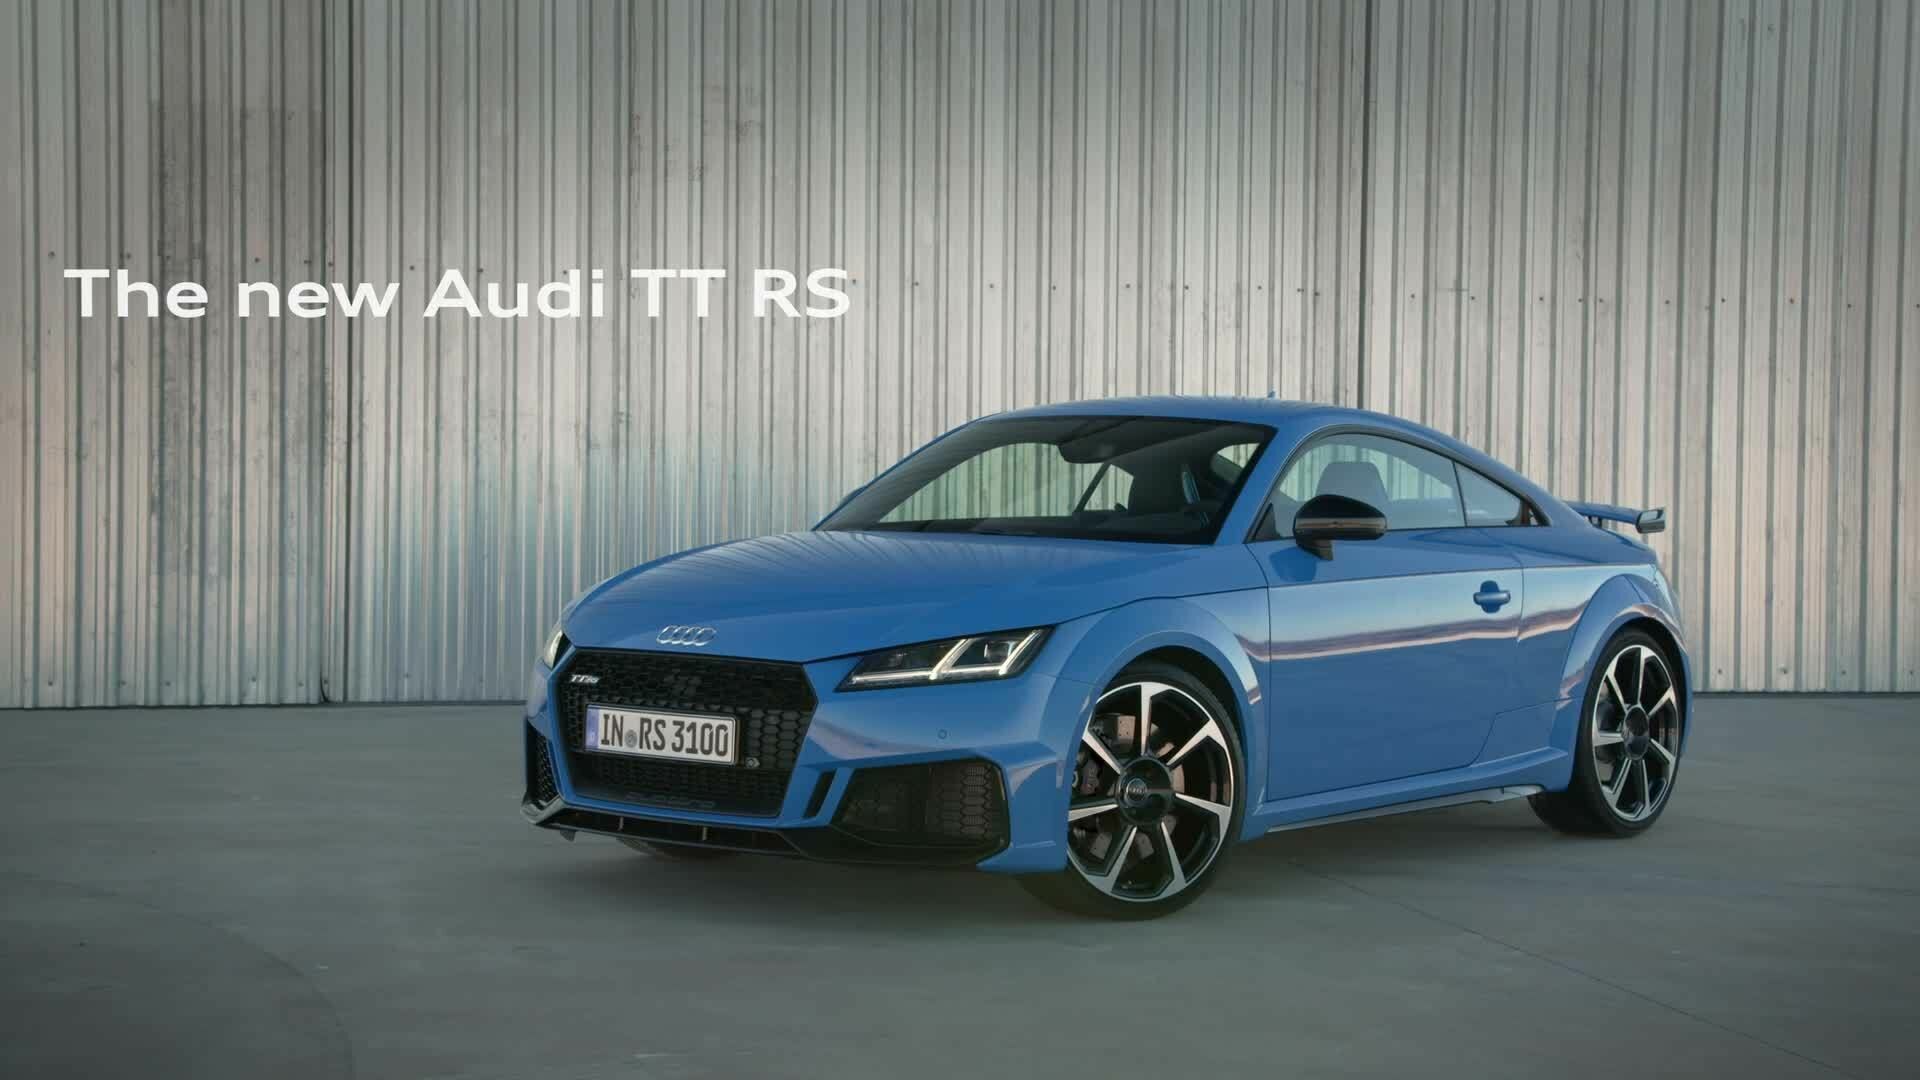 Audi TT RS (Trailer)